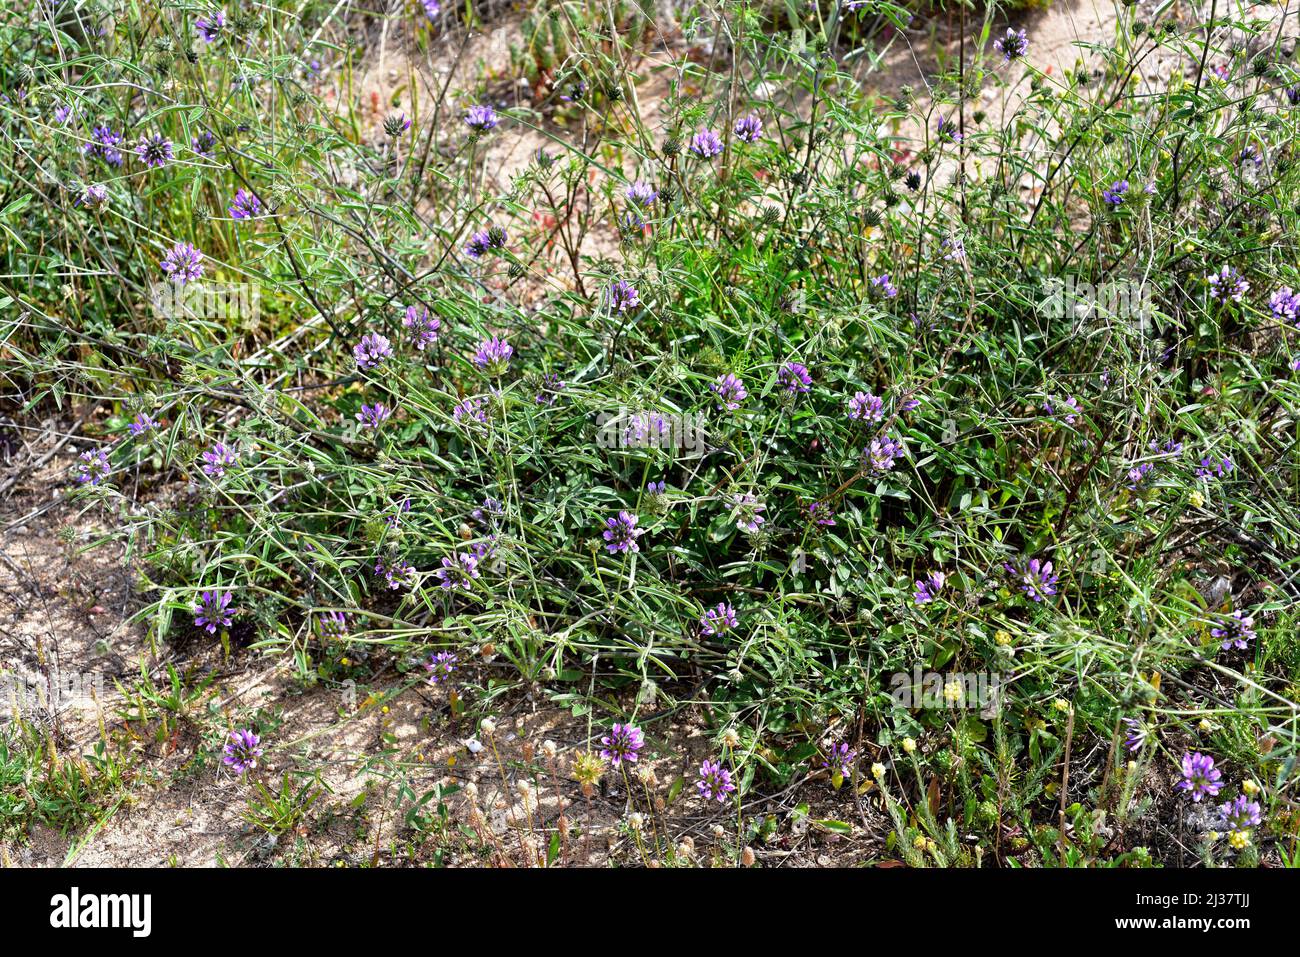 Il pisello arabo (Bituminaria bituminosa o Psoralea bituminosa) è un'erba perenne originaria del bacino mediterraneo e delle isole Canarie. Foto Stock